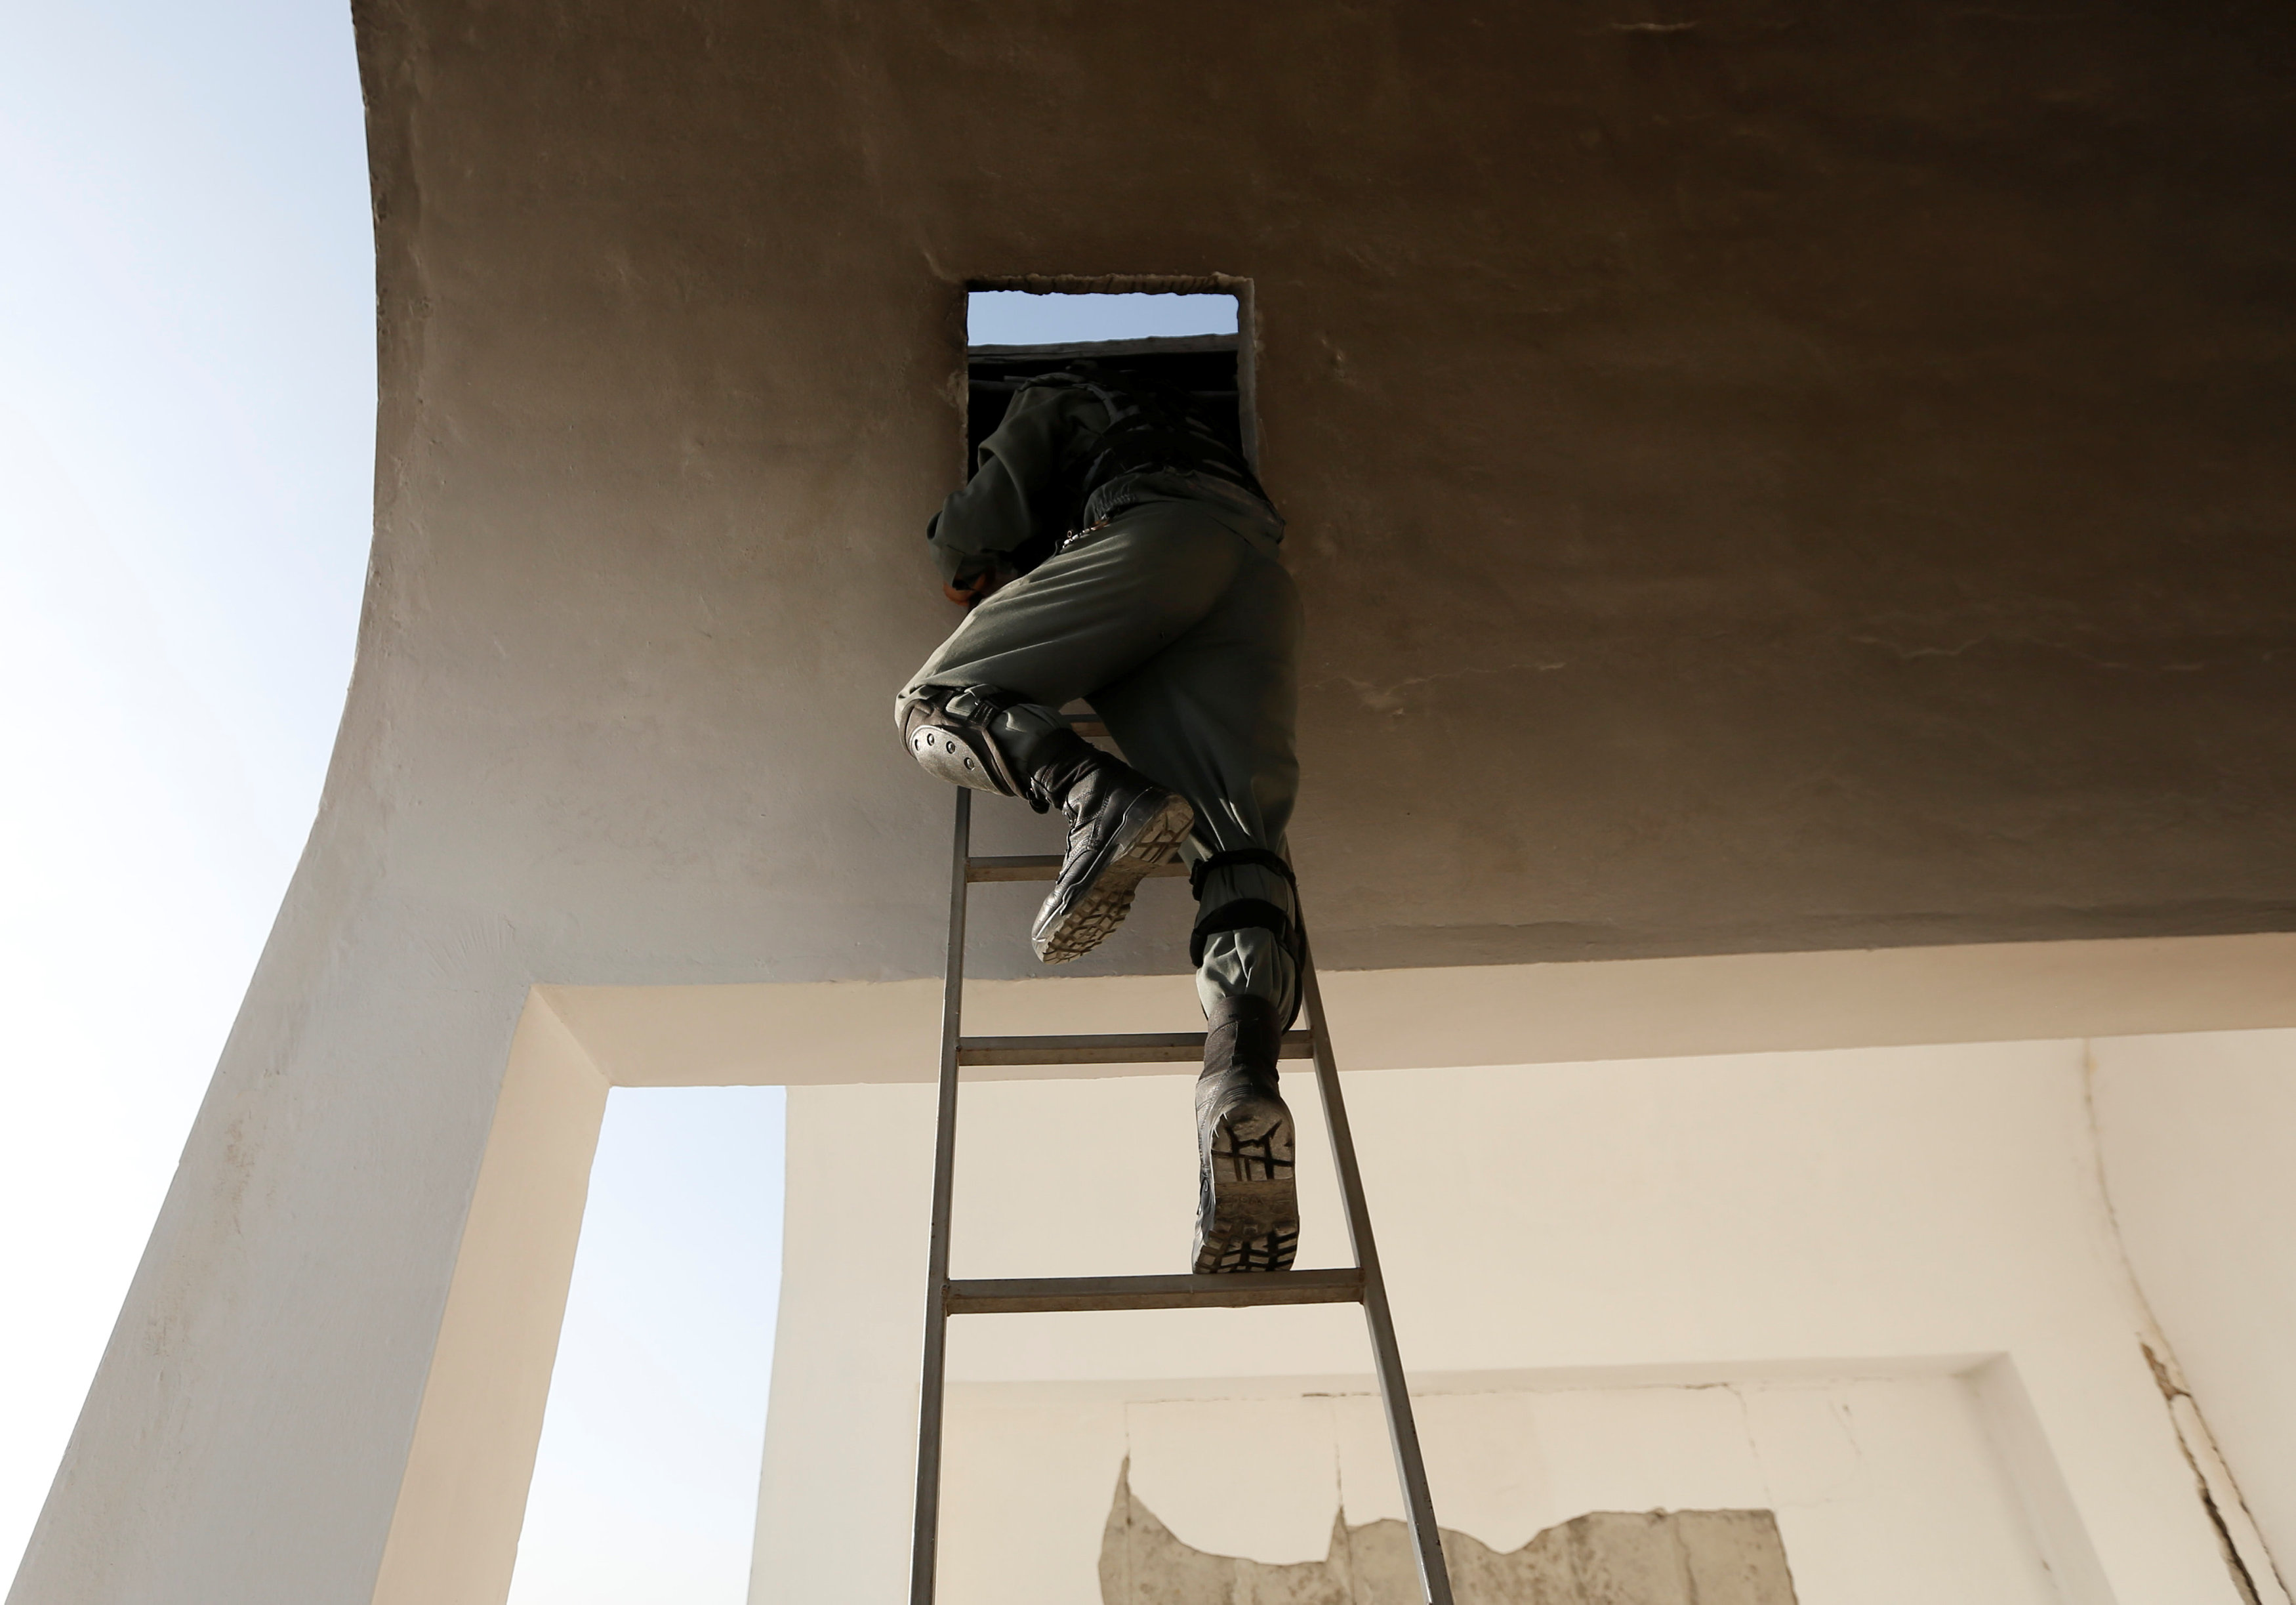 أحد أفراد الشرطة الأفغانية يتسلق سلم للصعود أعلى المسجد